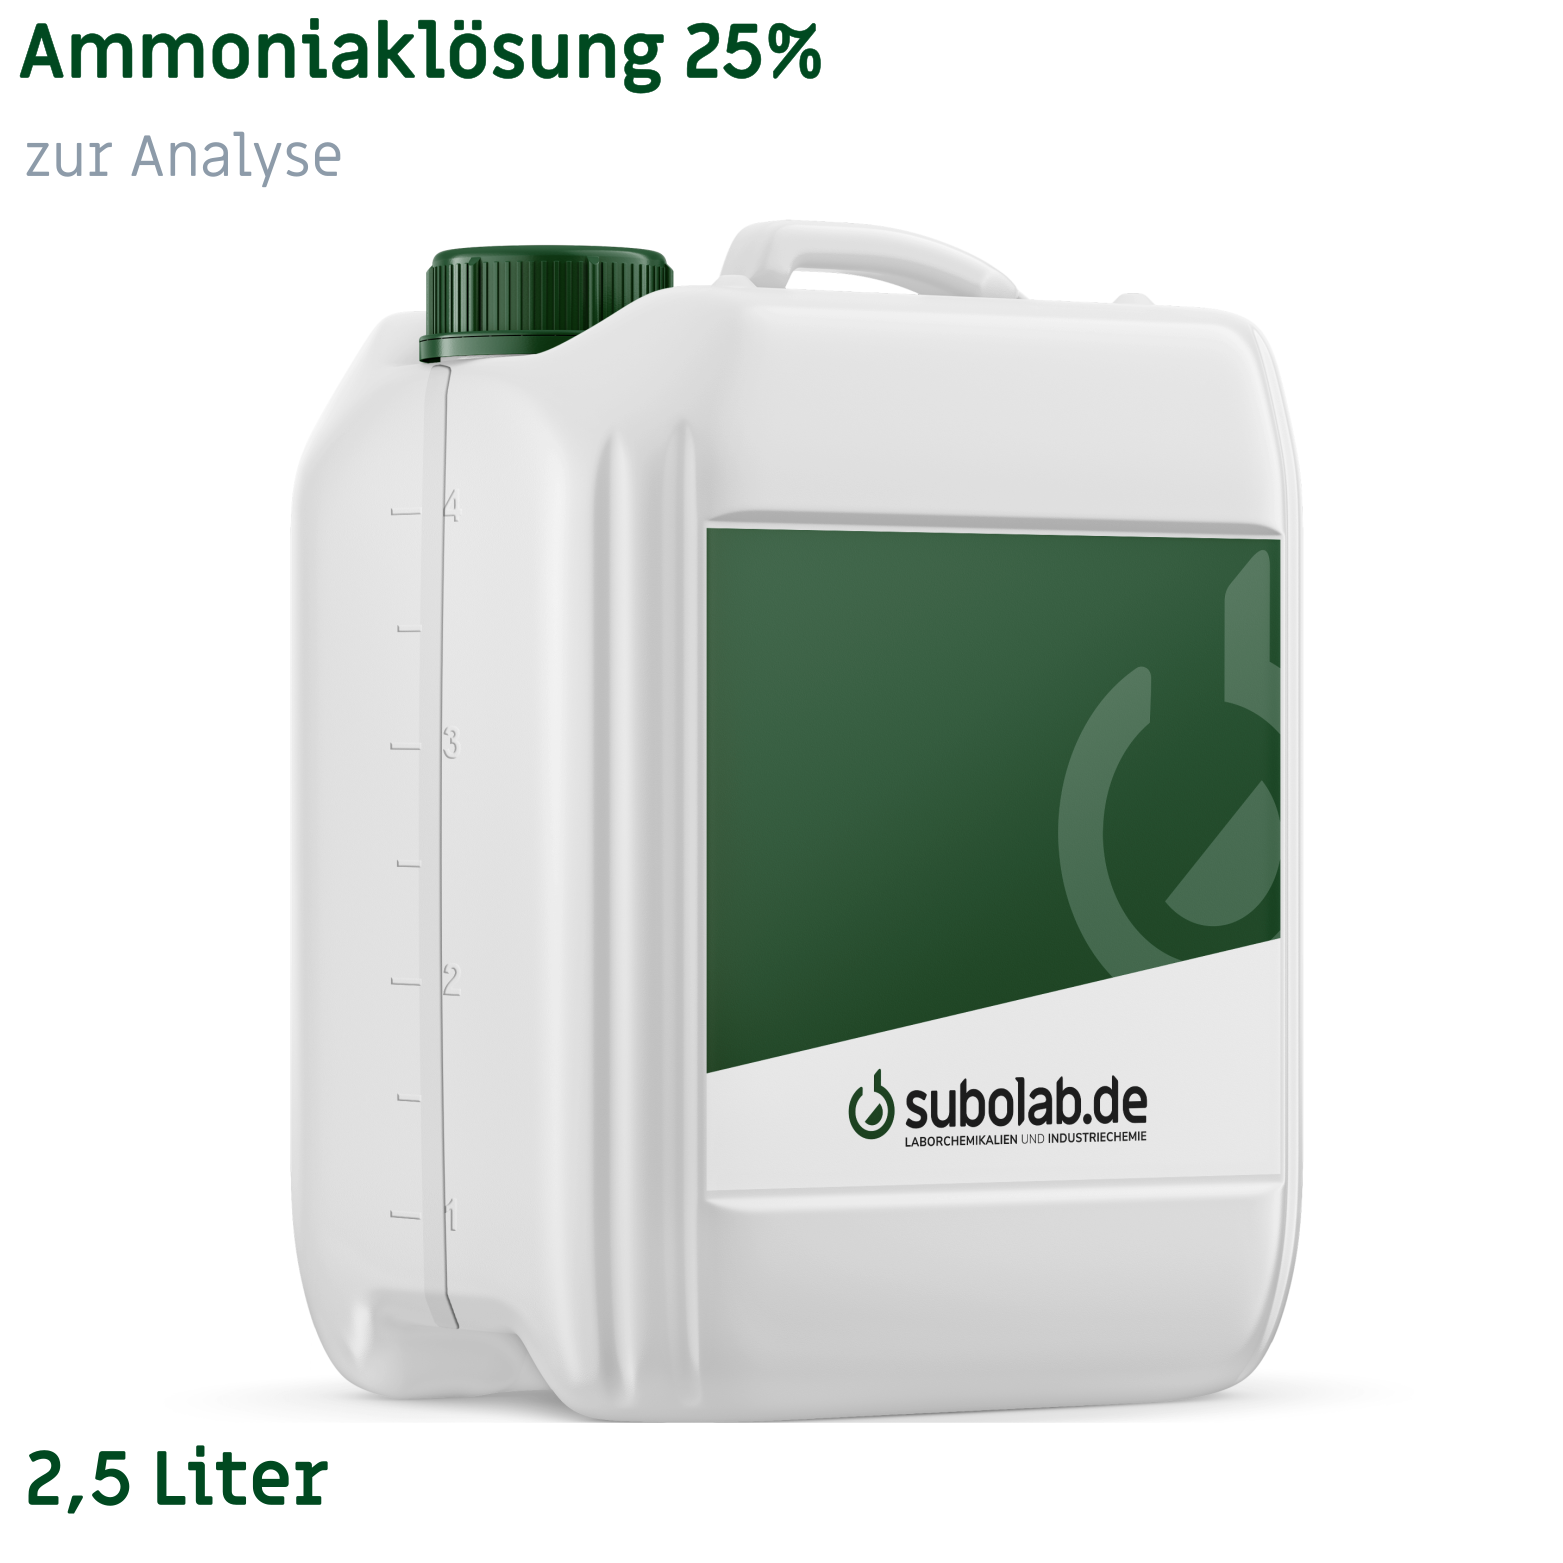 Bild von Ammoniaklösung 25% zur Analyse (2,5 Liter)